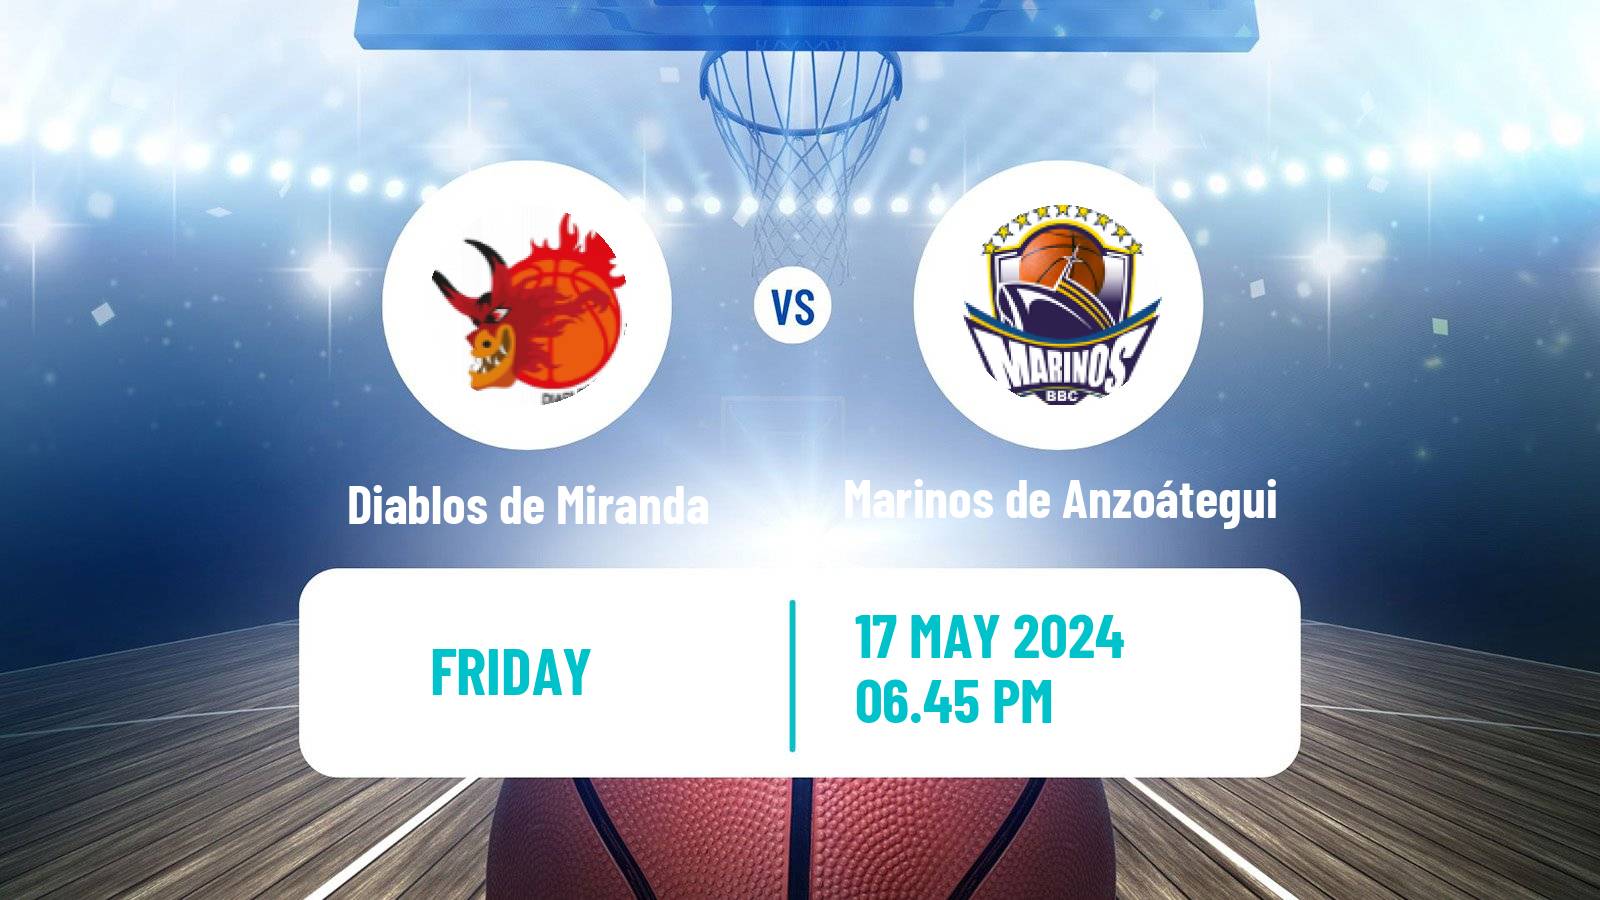 Basketball Venezuelan Superliga Basketball Diablos de Miranda - Marinos de Anzoátegui